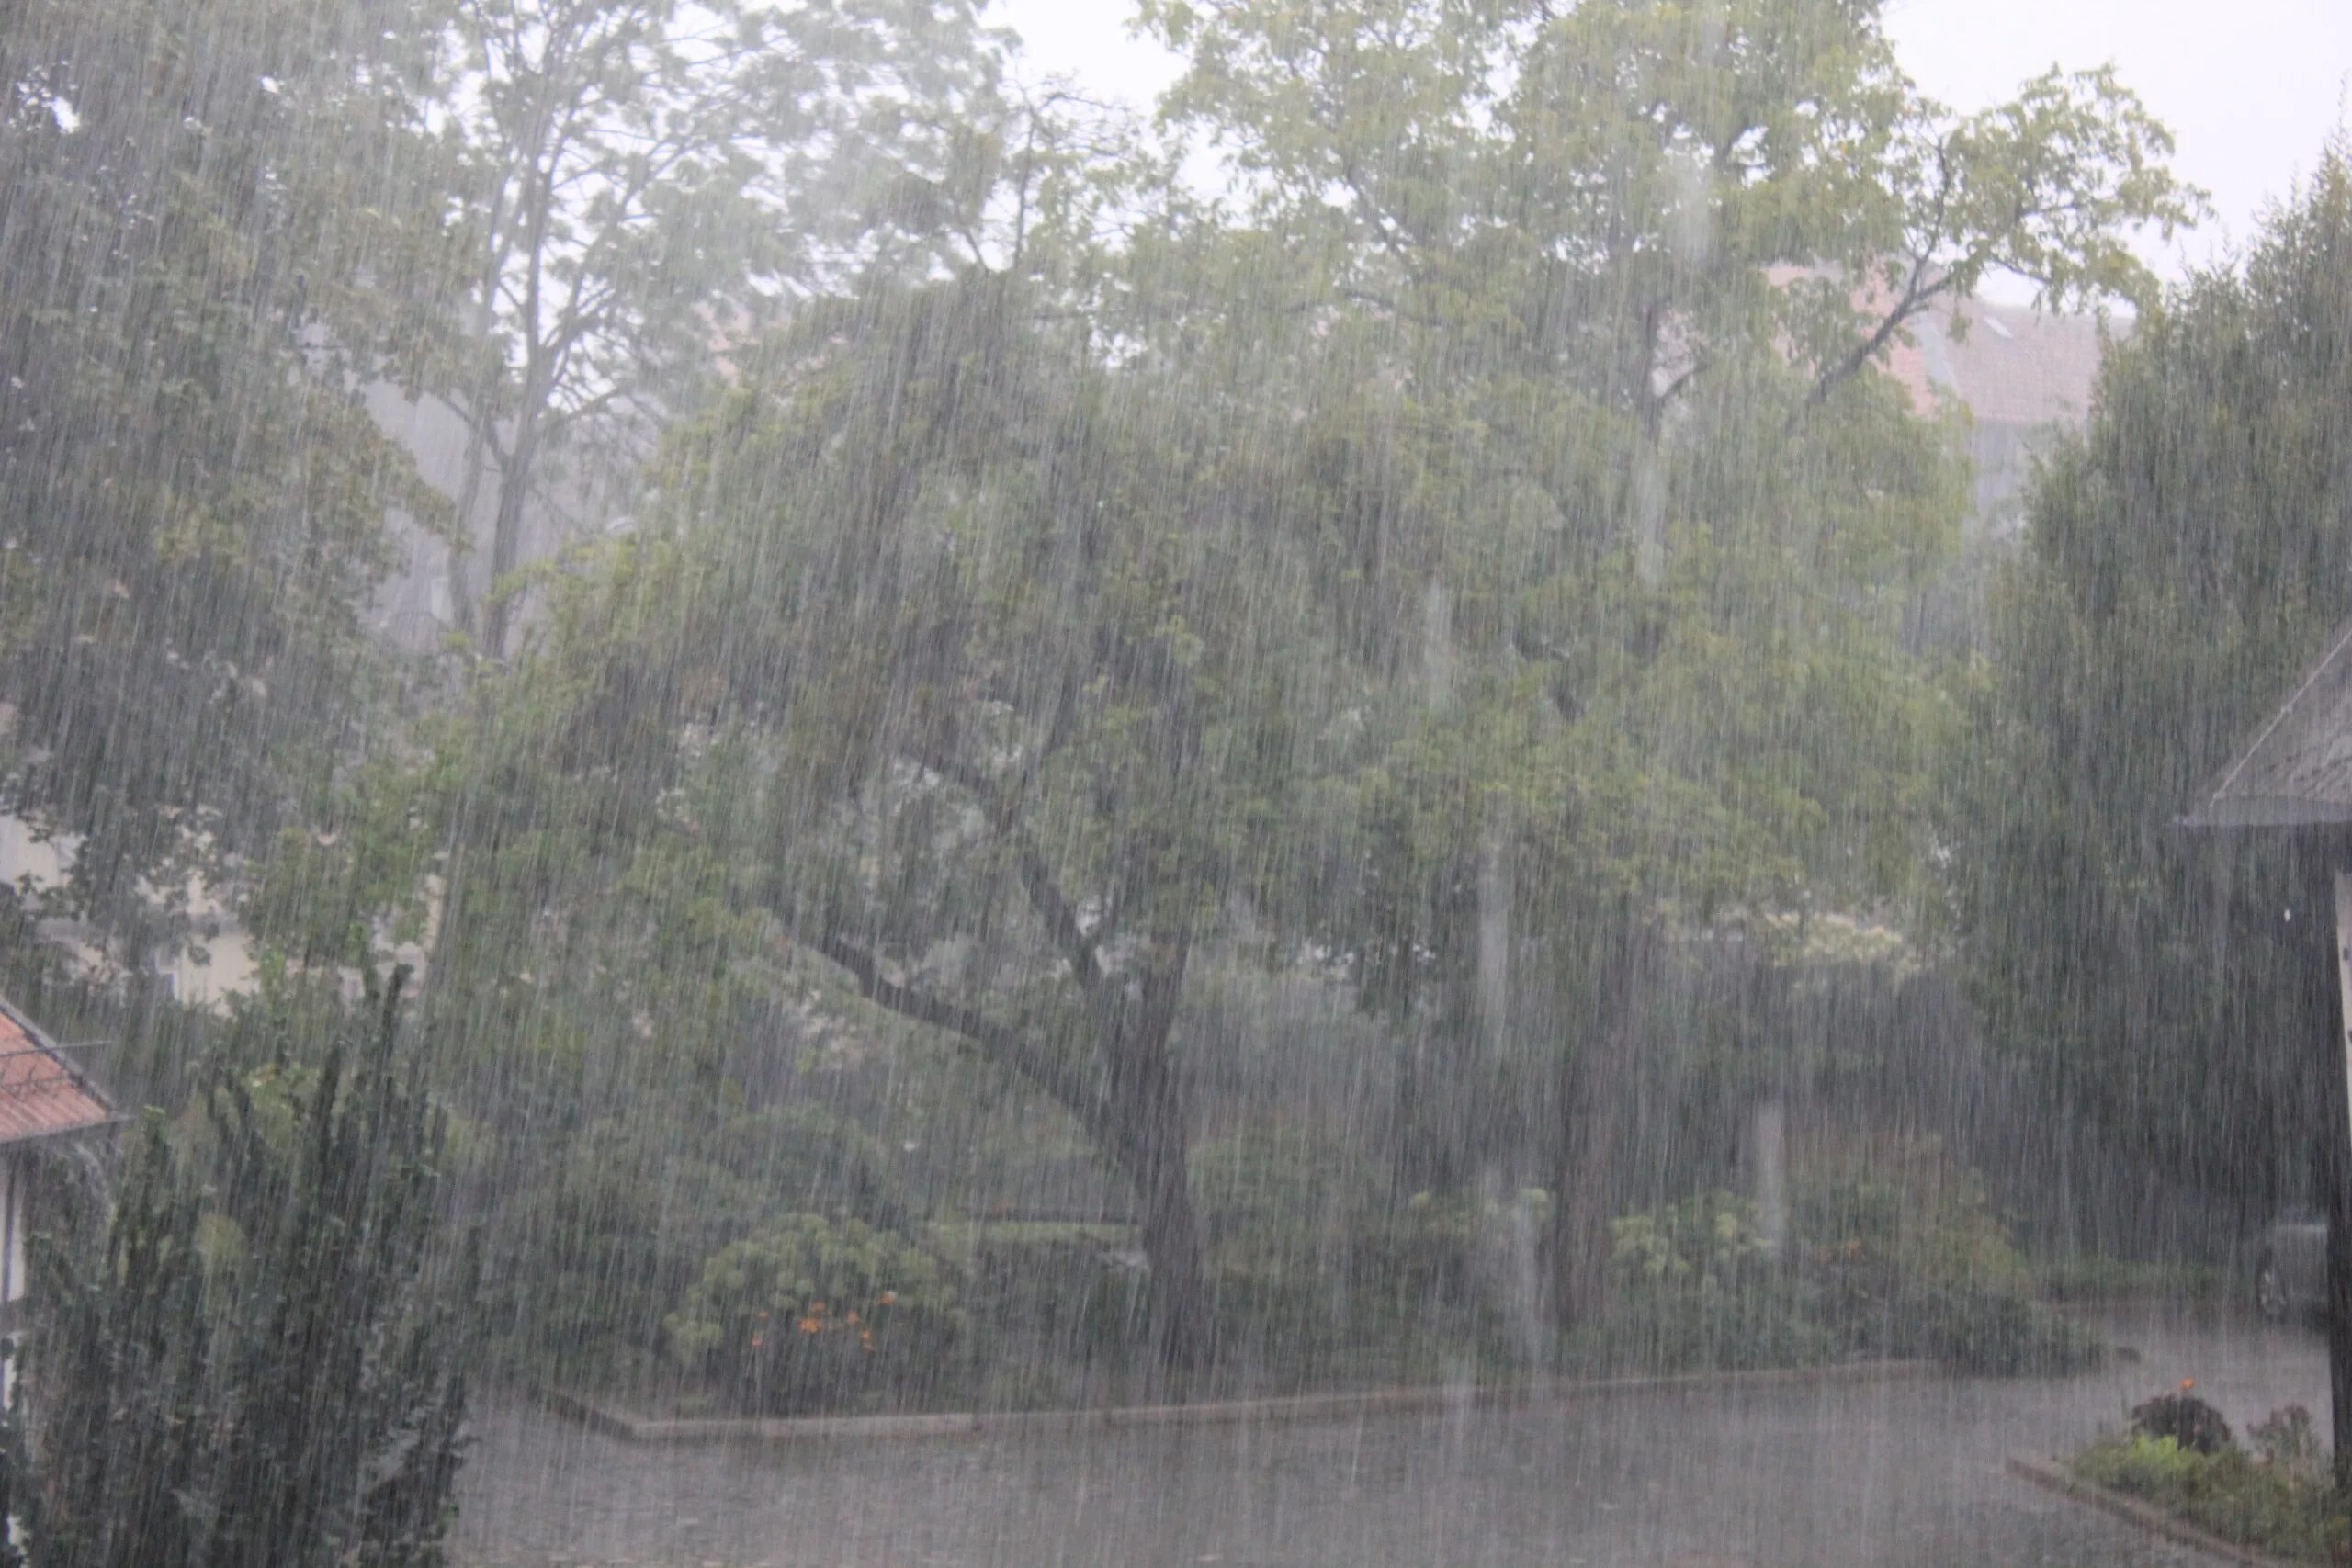 Pour Rain. Pouring with Rain. Pouring Rain in Amazon. Pouring down погода.